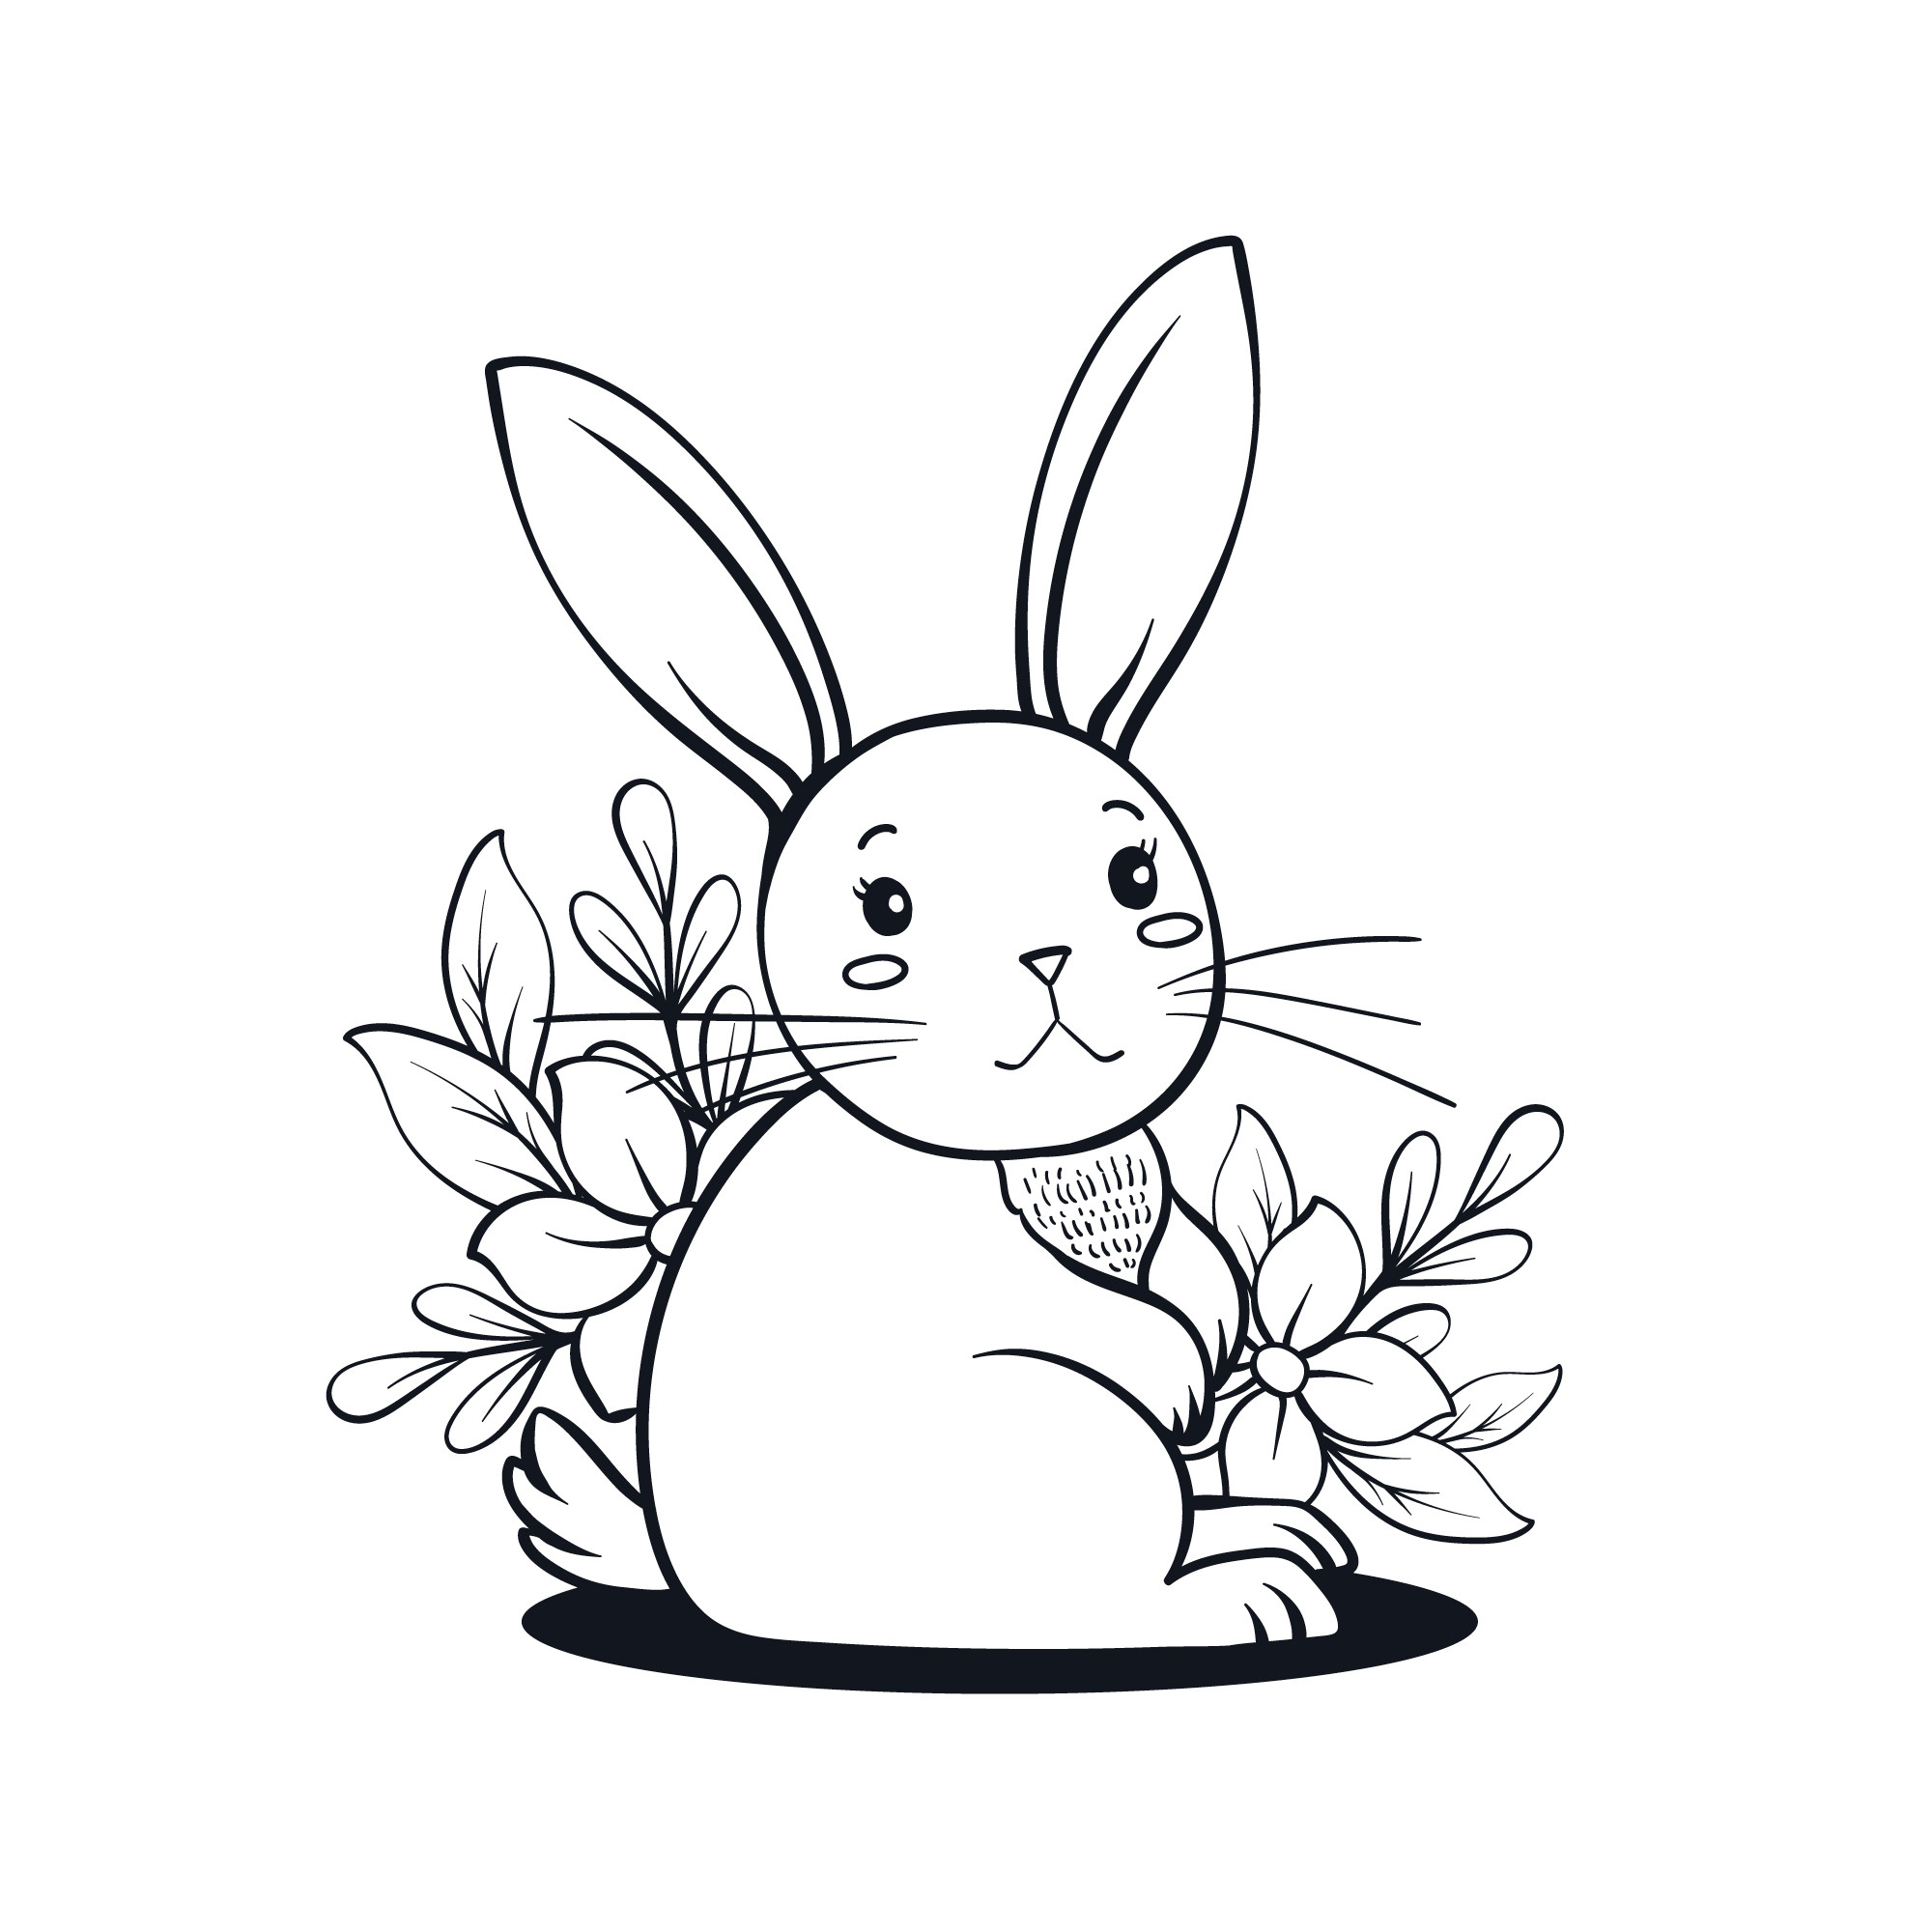 Раскраска для детей: грустный заяц сидит на фоне цветов